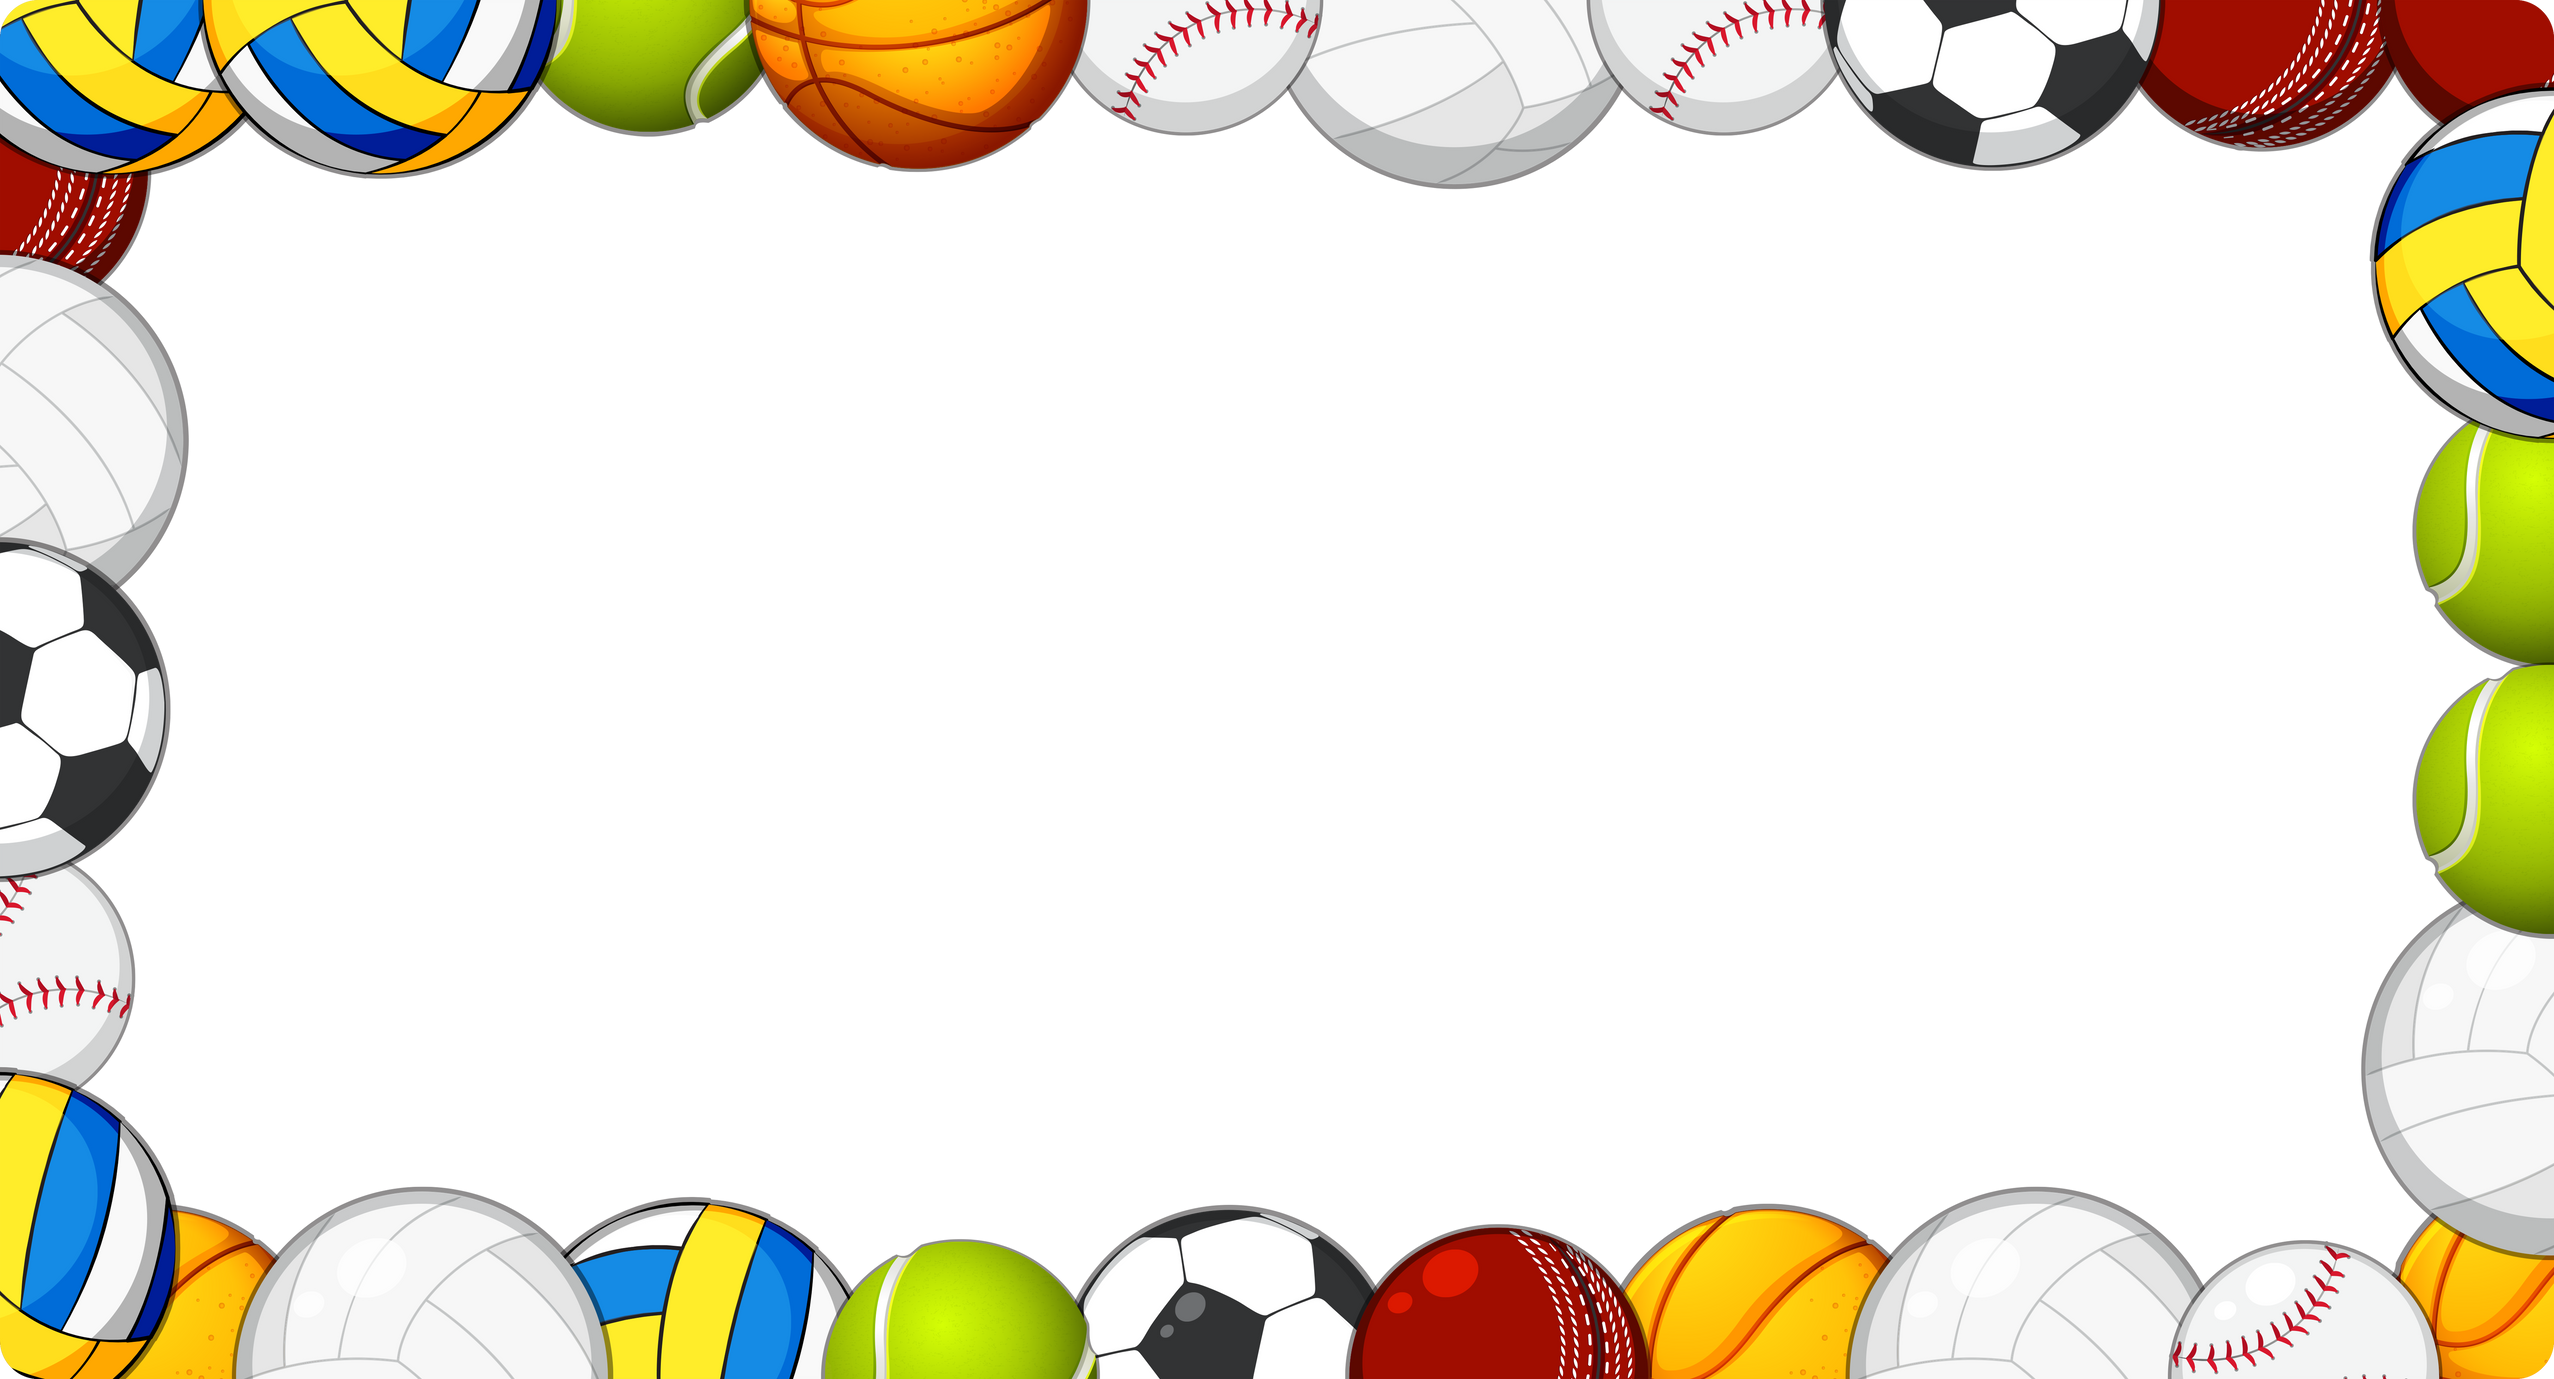 A sport ball frame